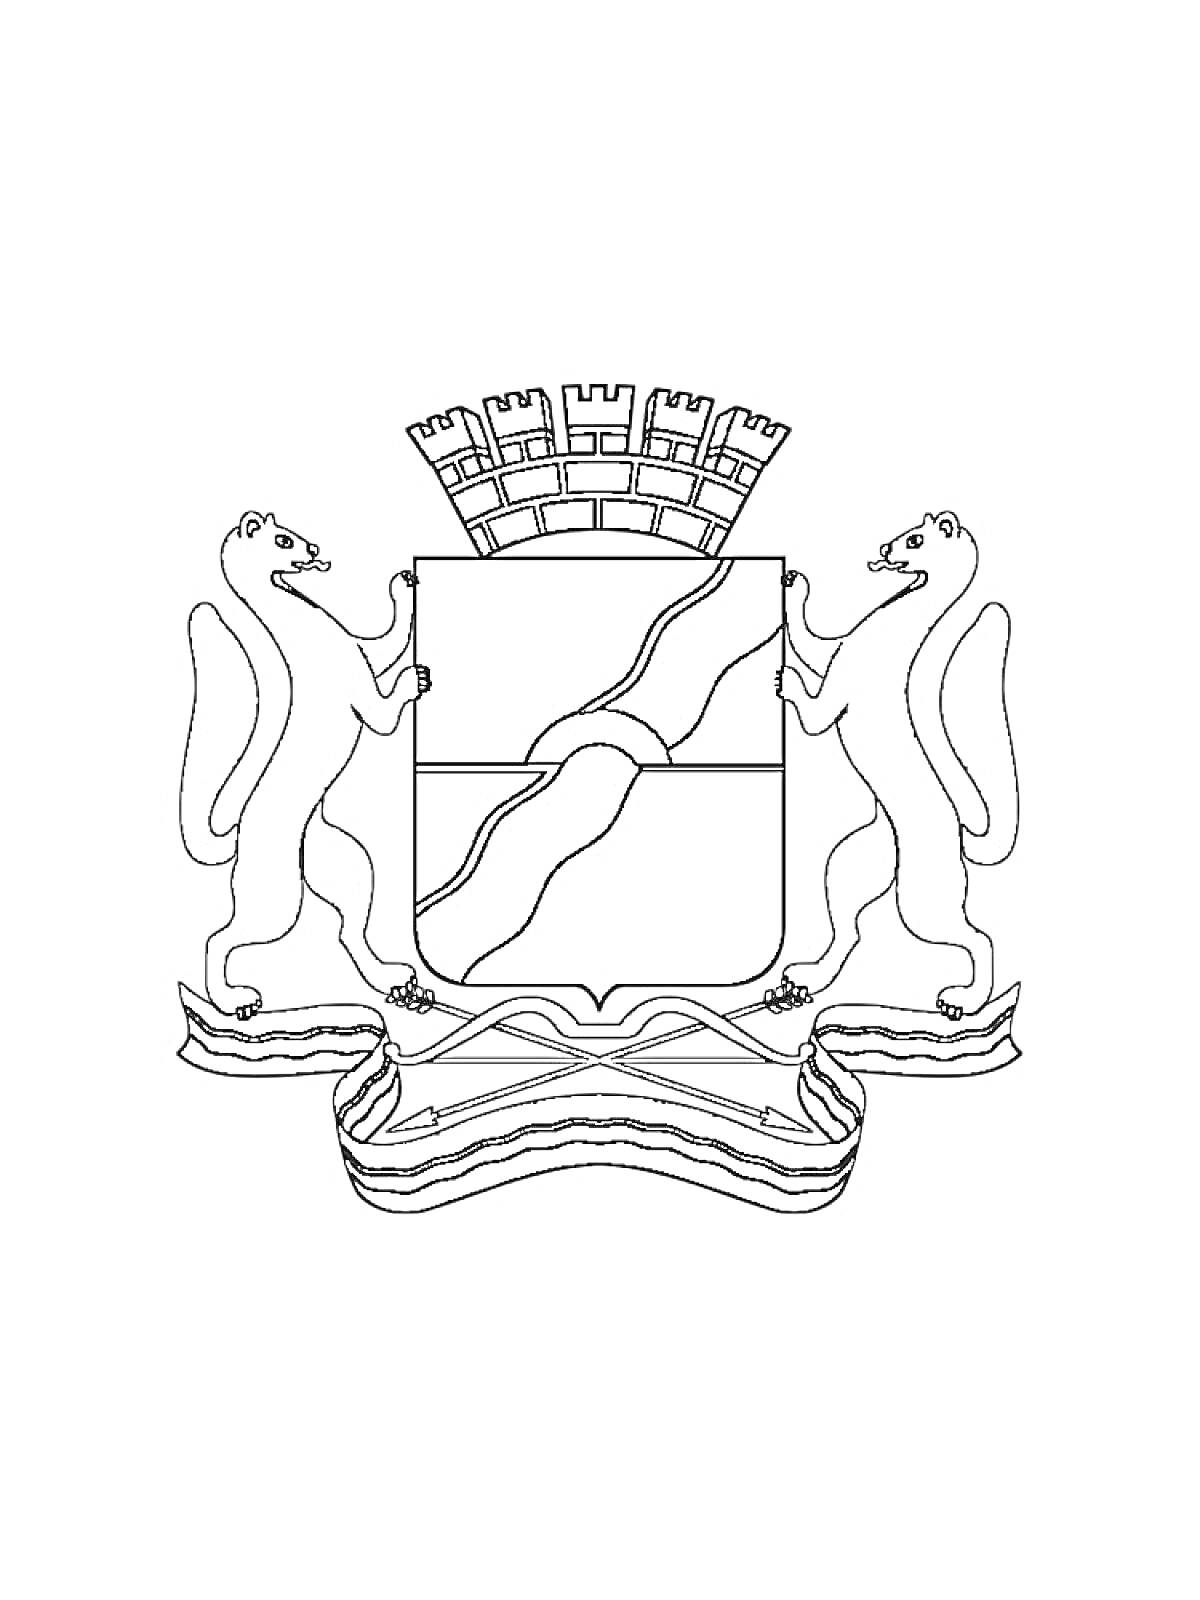 Герб с двумя стоящими норками, держащими щит с диагональной волной, увенчанной башенной короной и лентой в основании